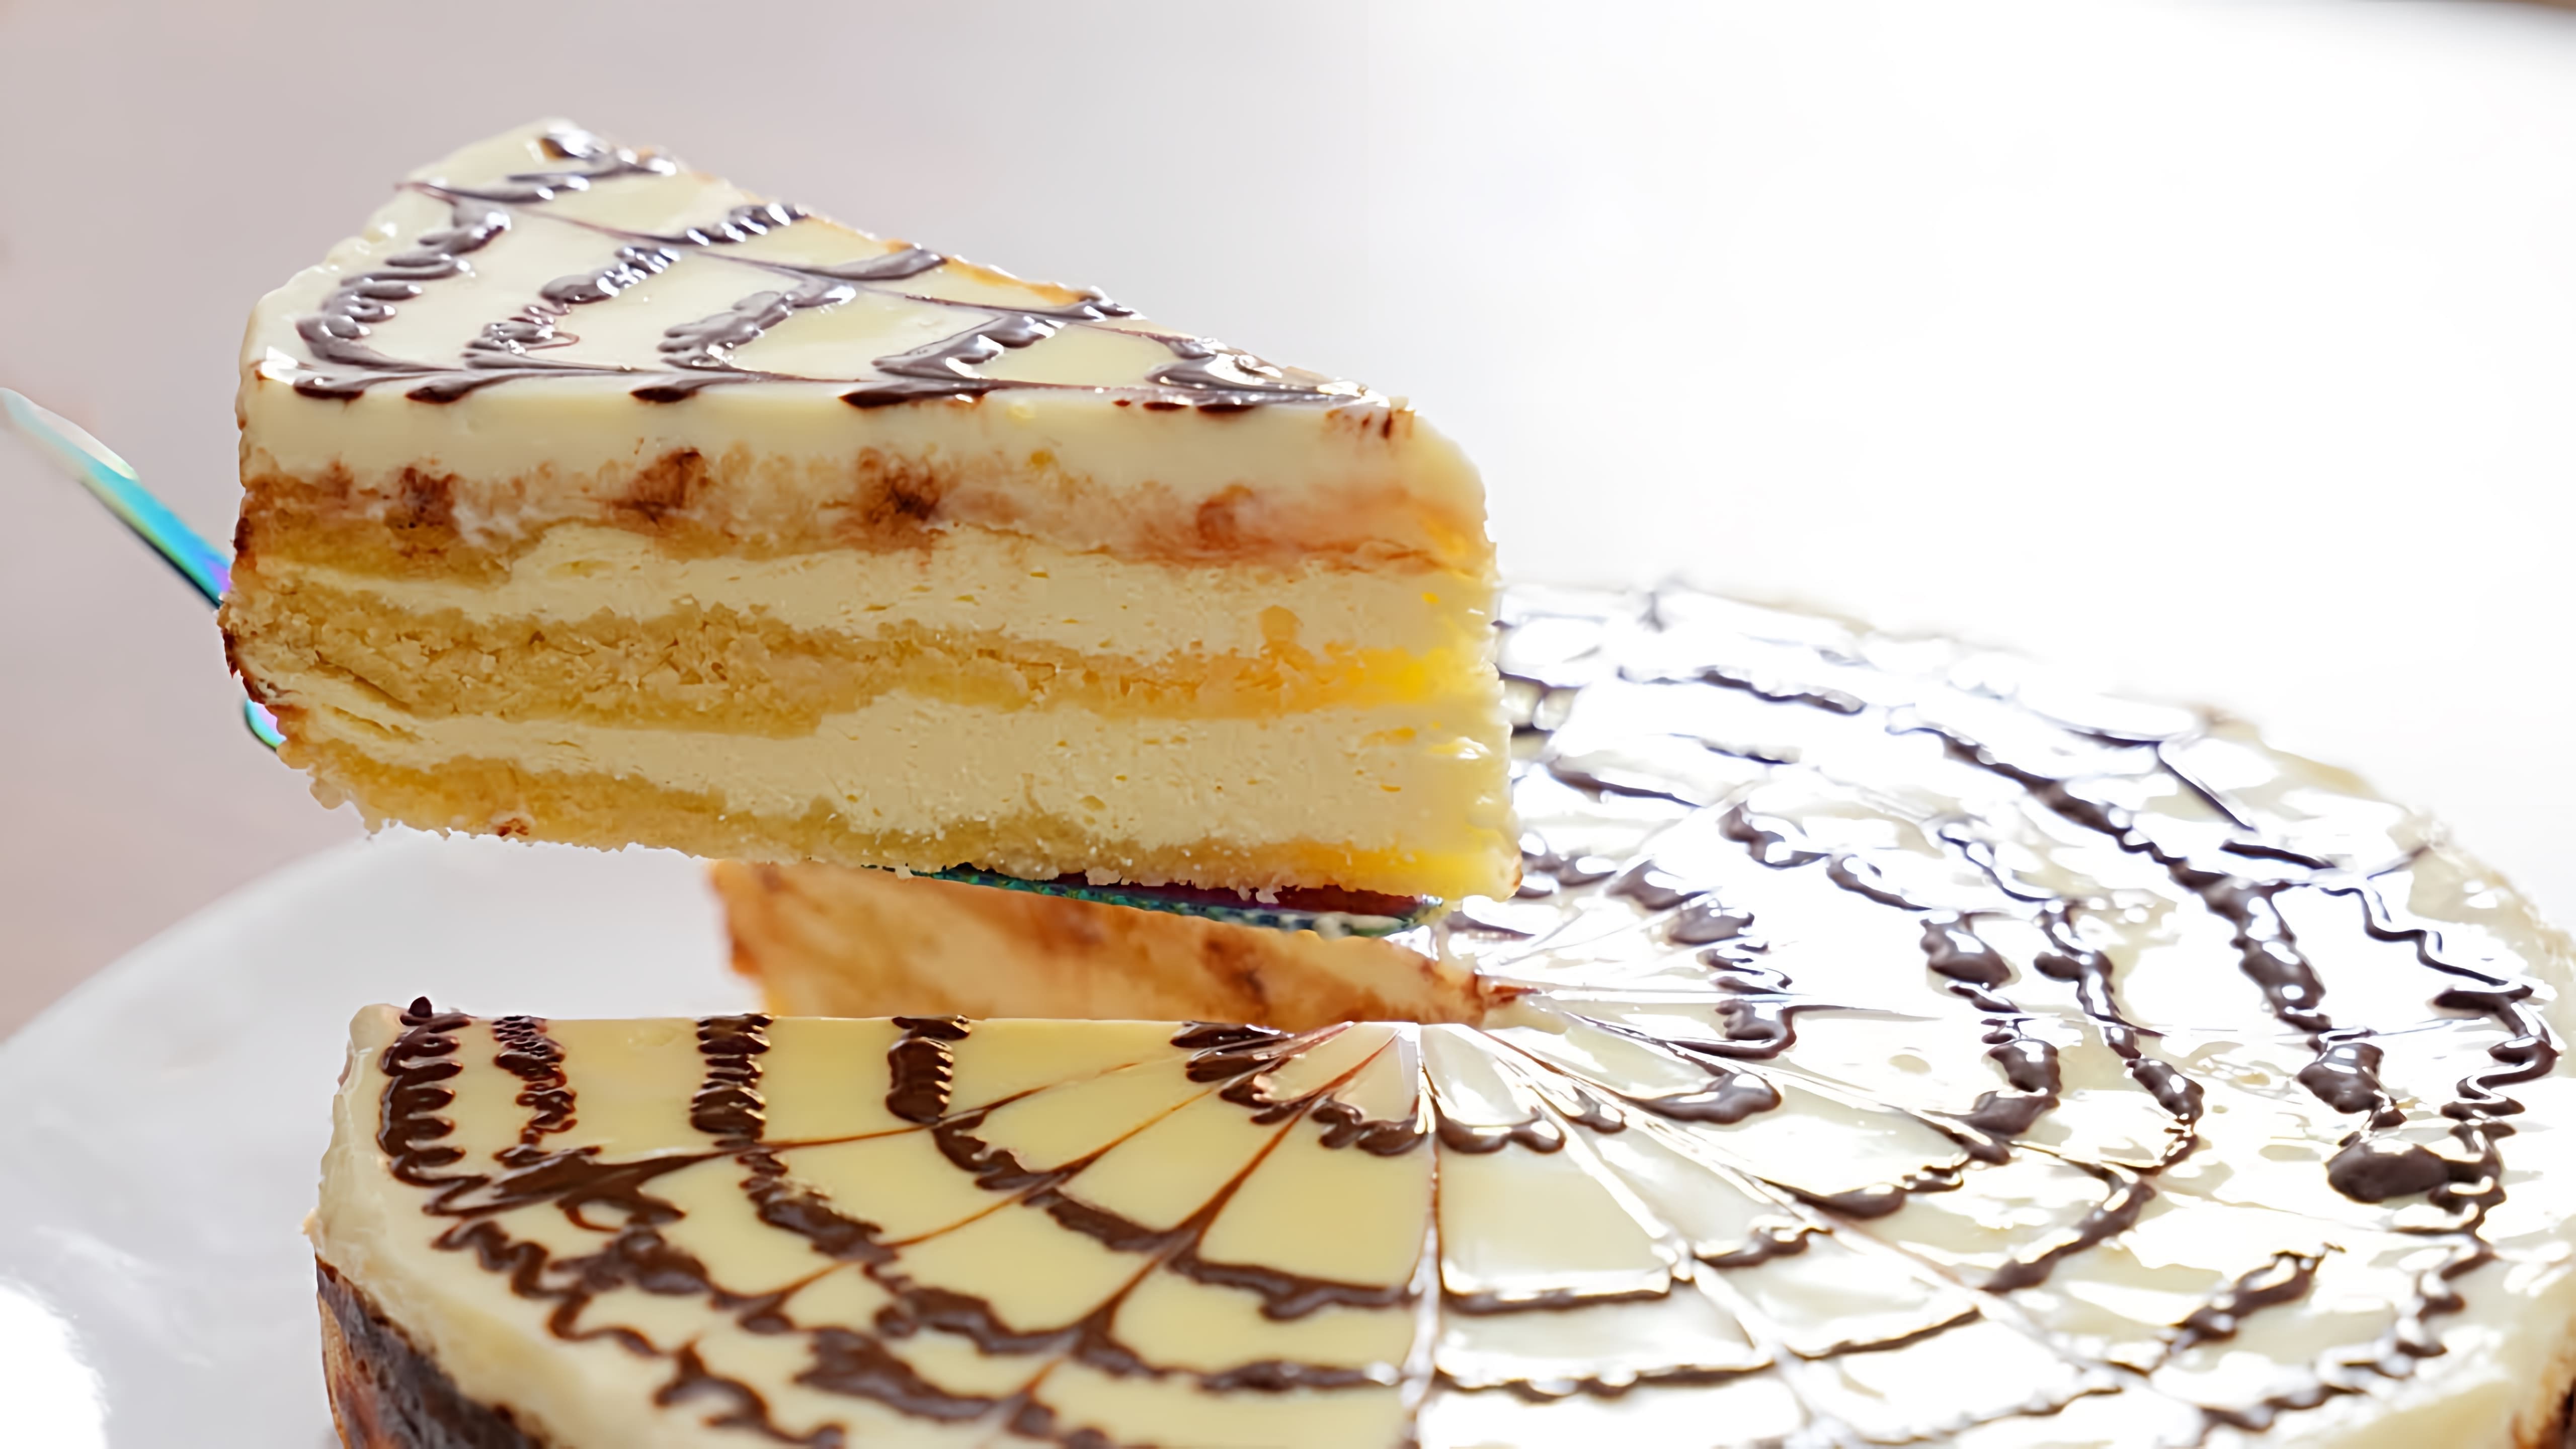 В этом видео демонстрируется рецепт приготовления Венгерской королевской ватрушки - вкусного и простого пирога